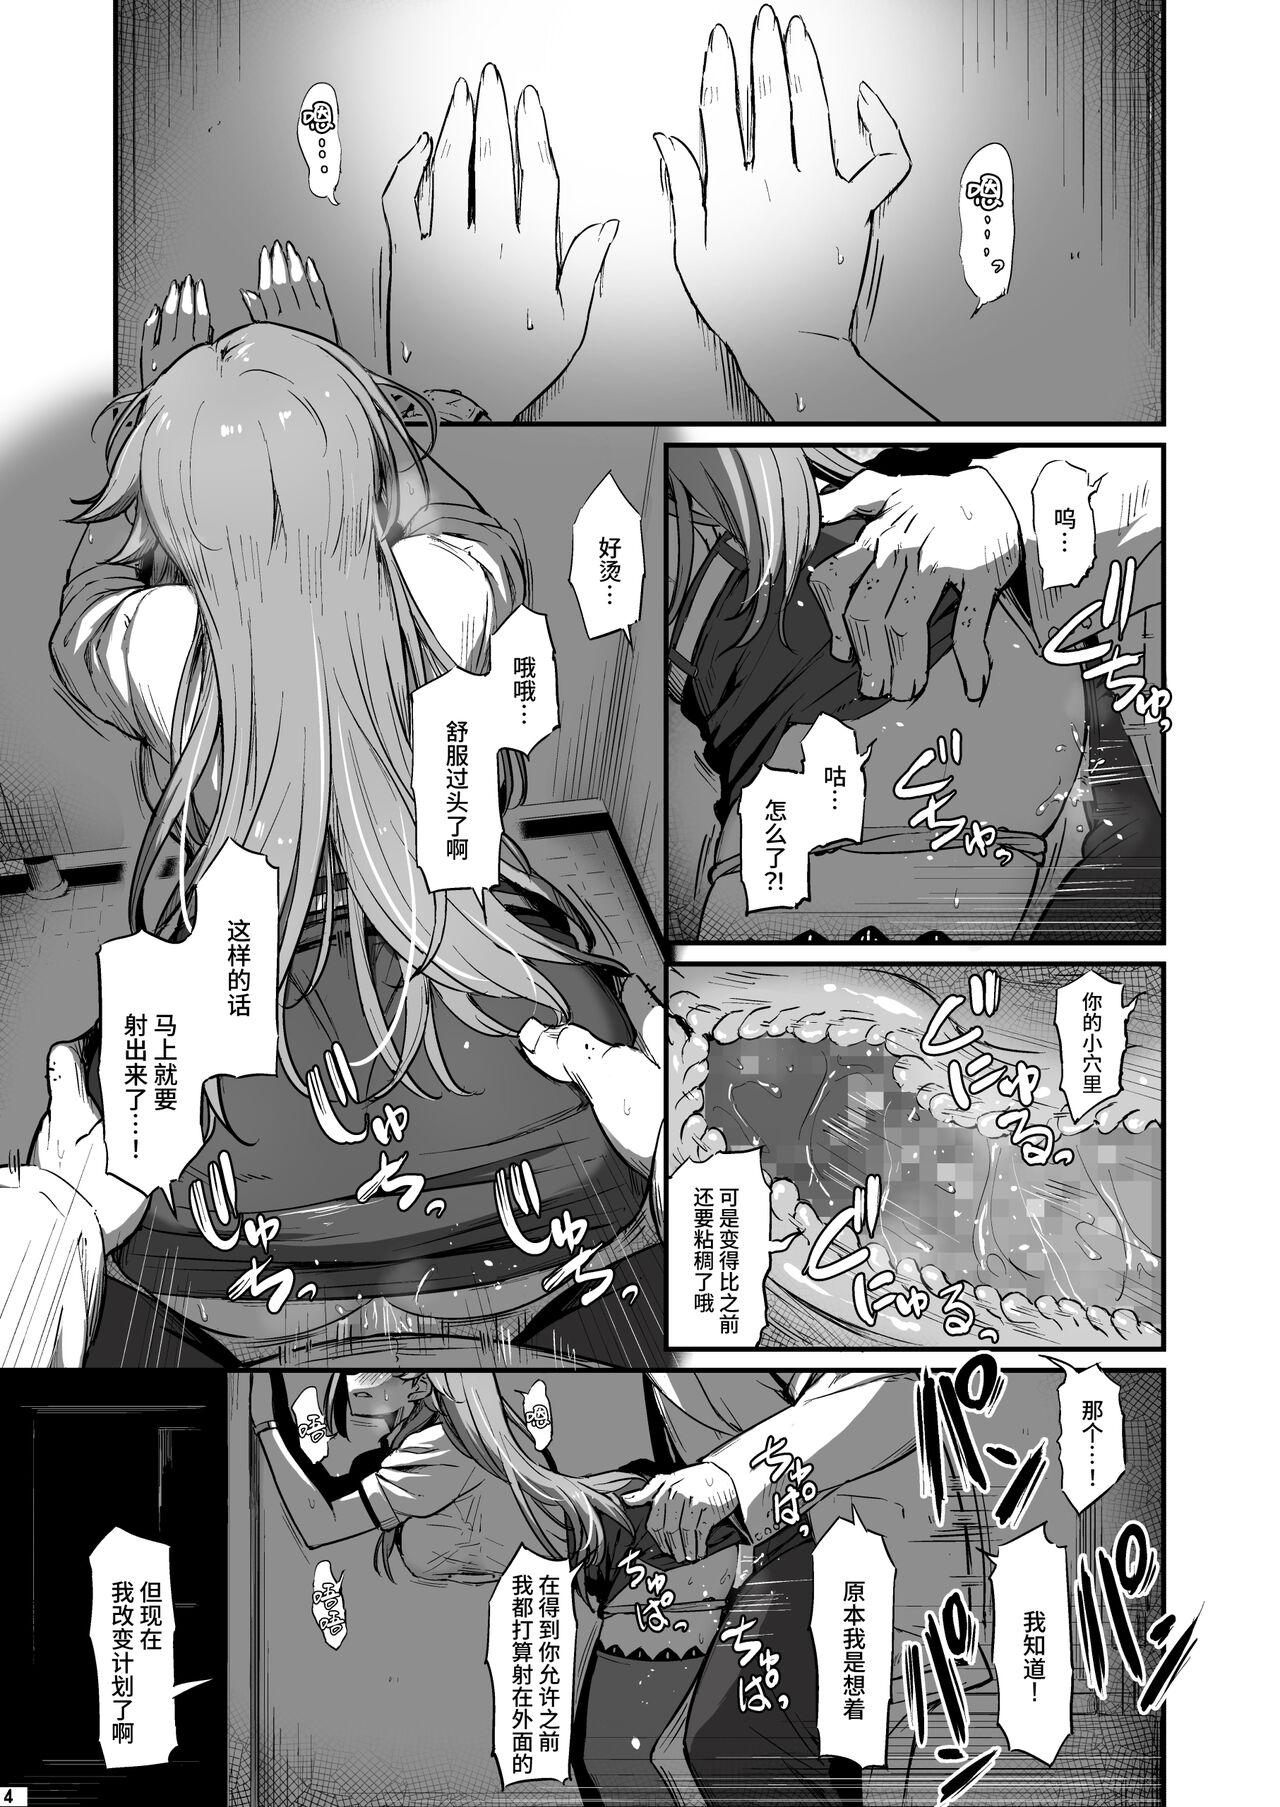 Sextoy Kagaku Junbishitsu no Tsumi 2 - Original Chubby - Page 5